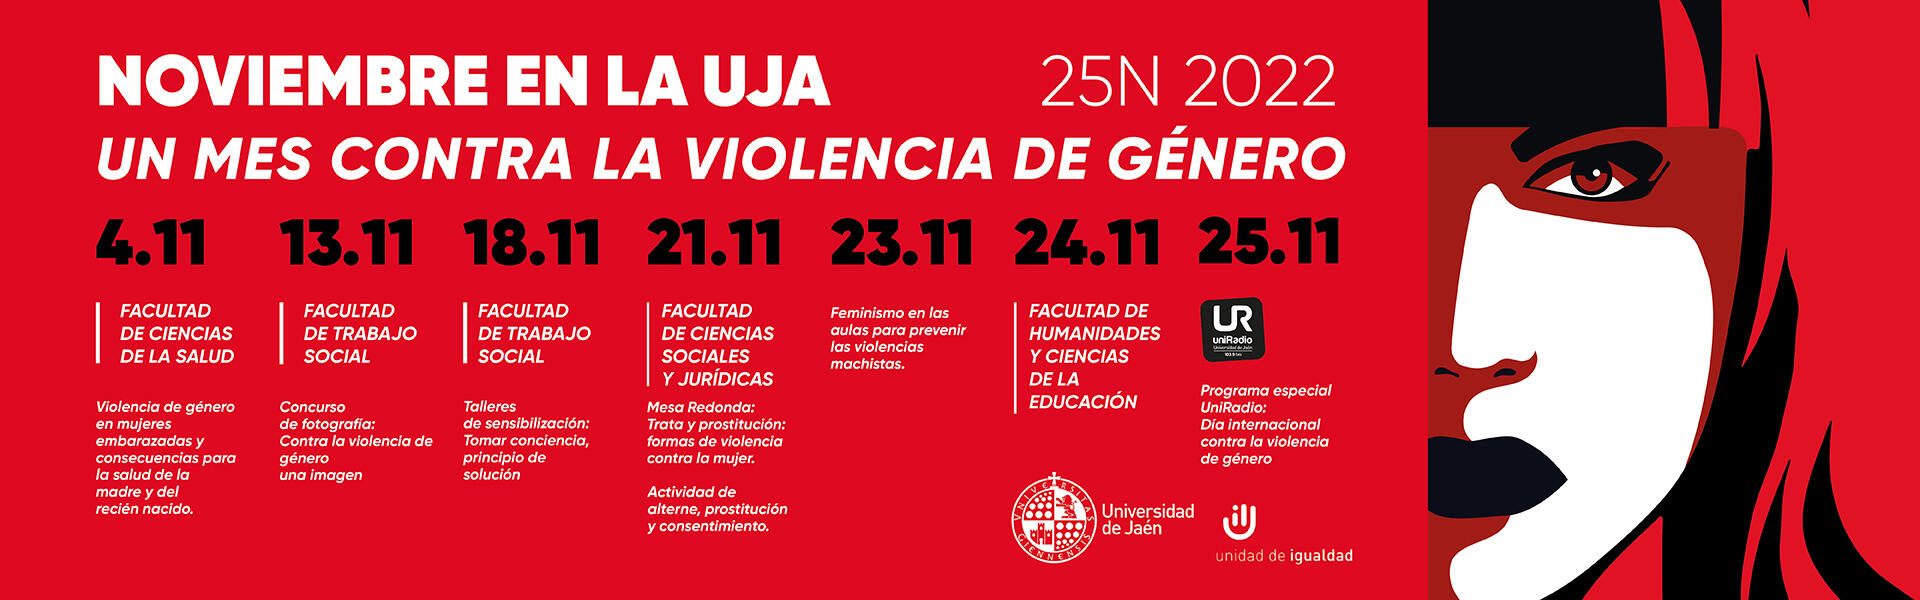 La UJA en noviembre: un mes contra la violencia de género